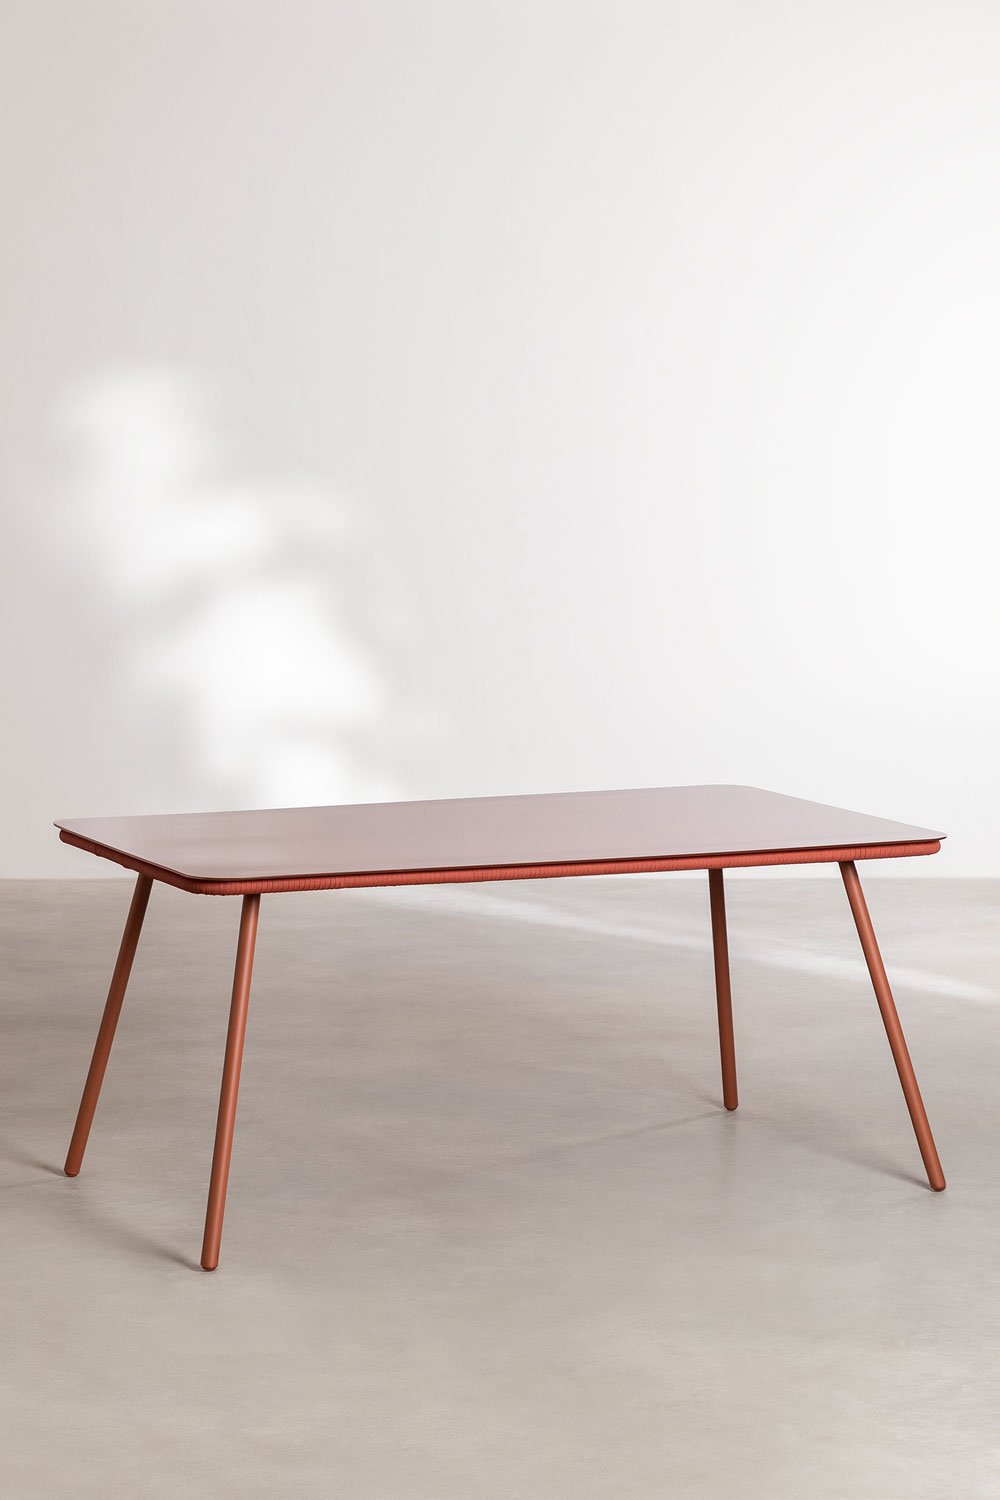 Prostokątny stół do jadalni ze szkła i aluminium (160x90 cm) Arhiza, obrazek w galerii 1